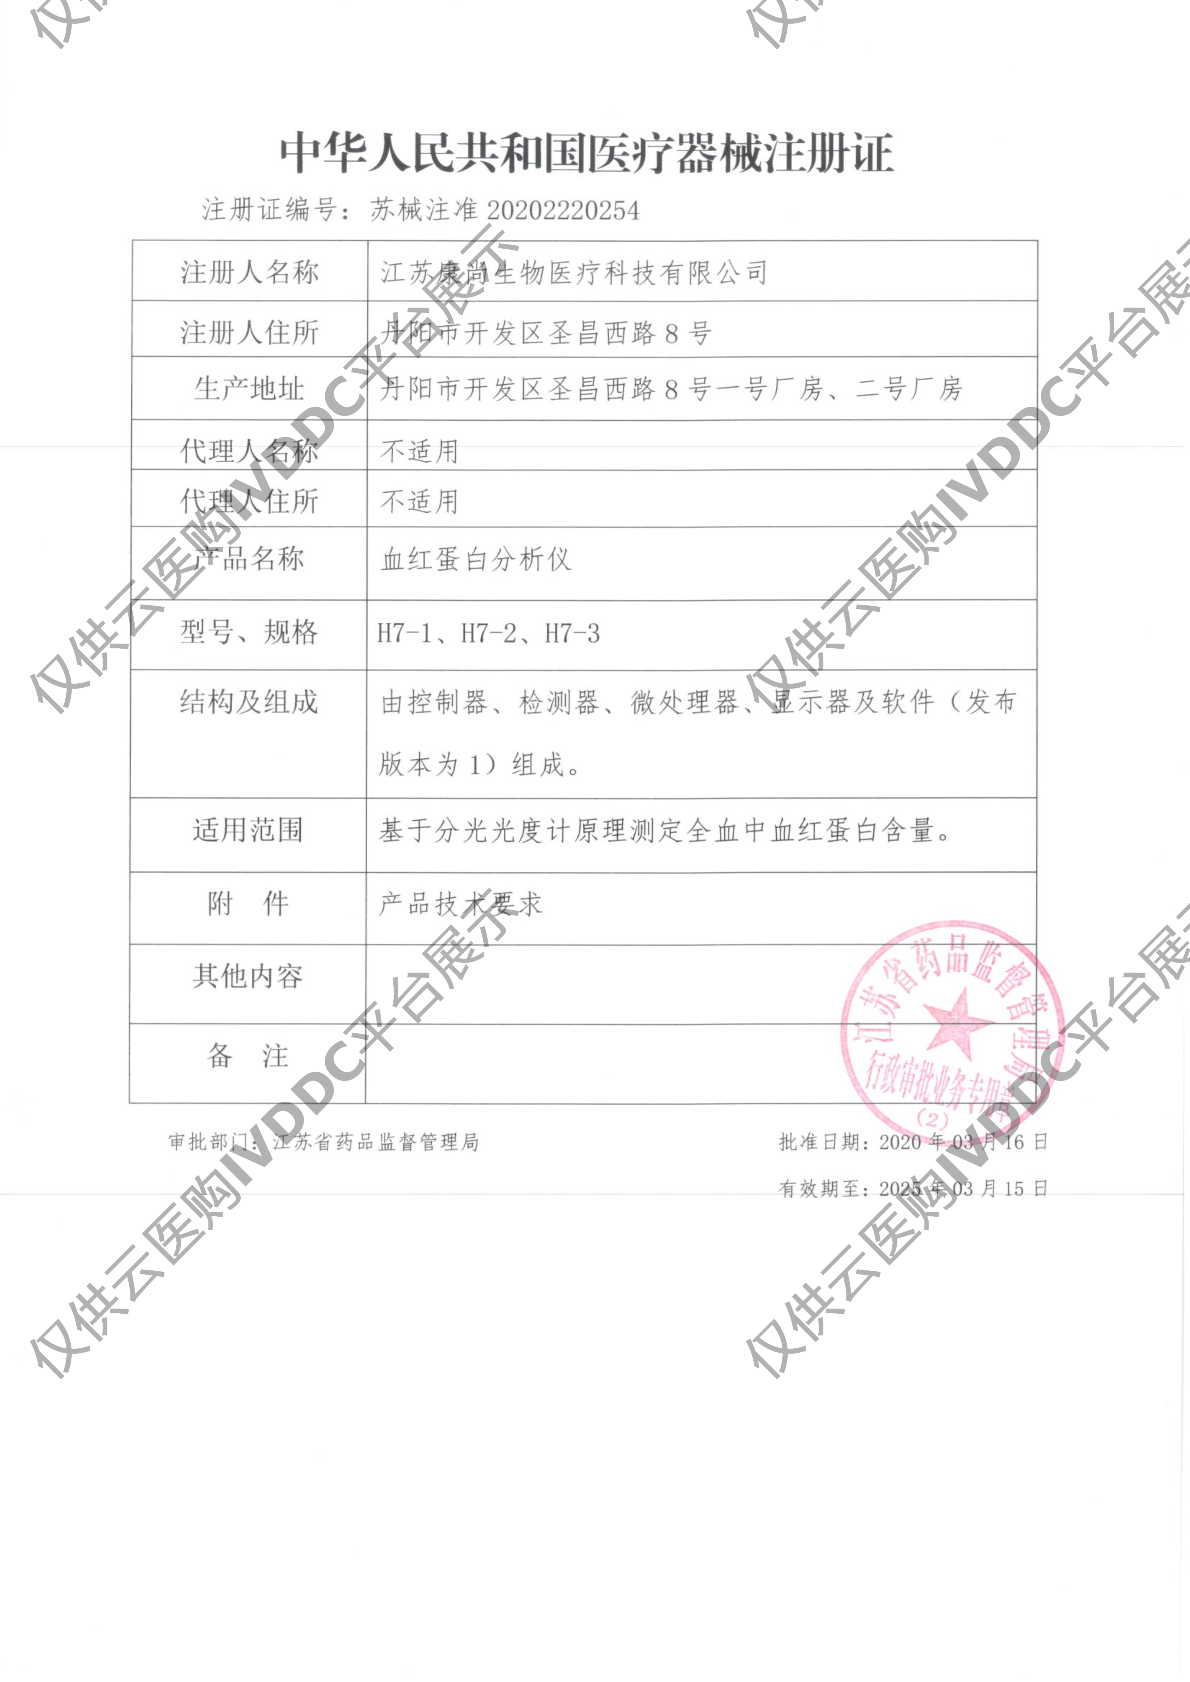 【康尚】血红蛋白分析仪H7注册证